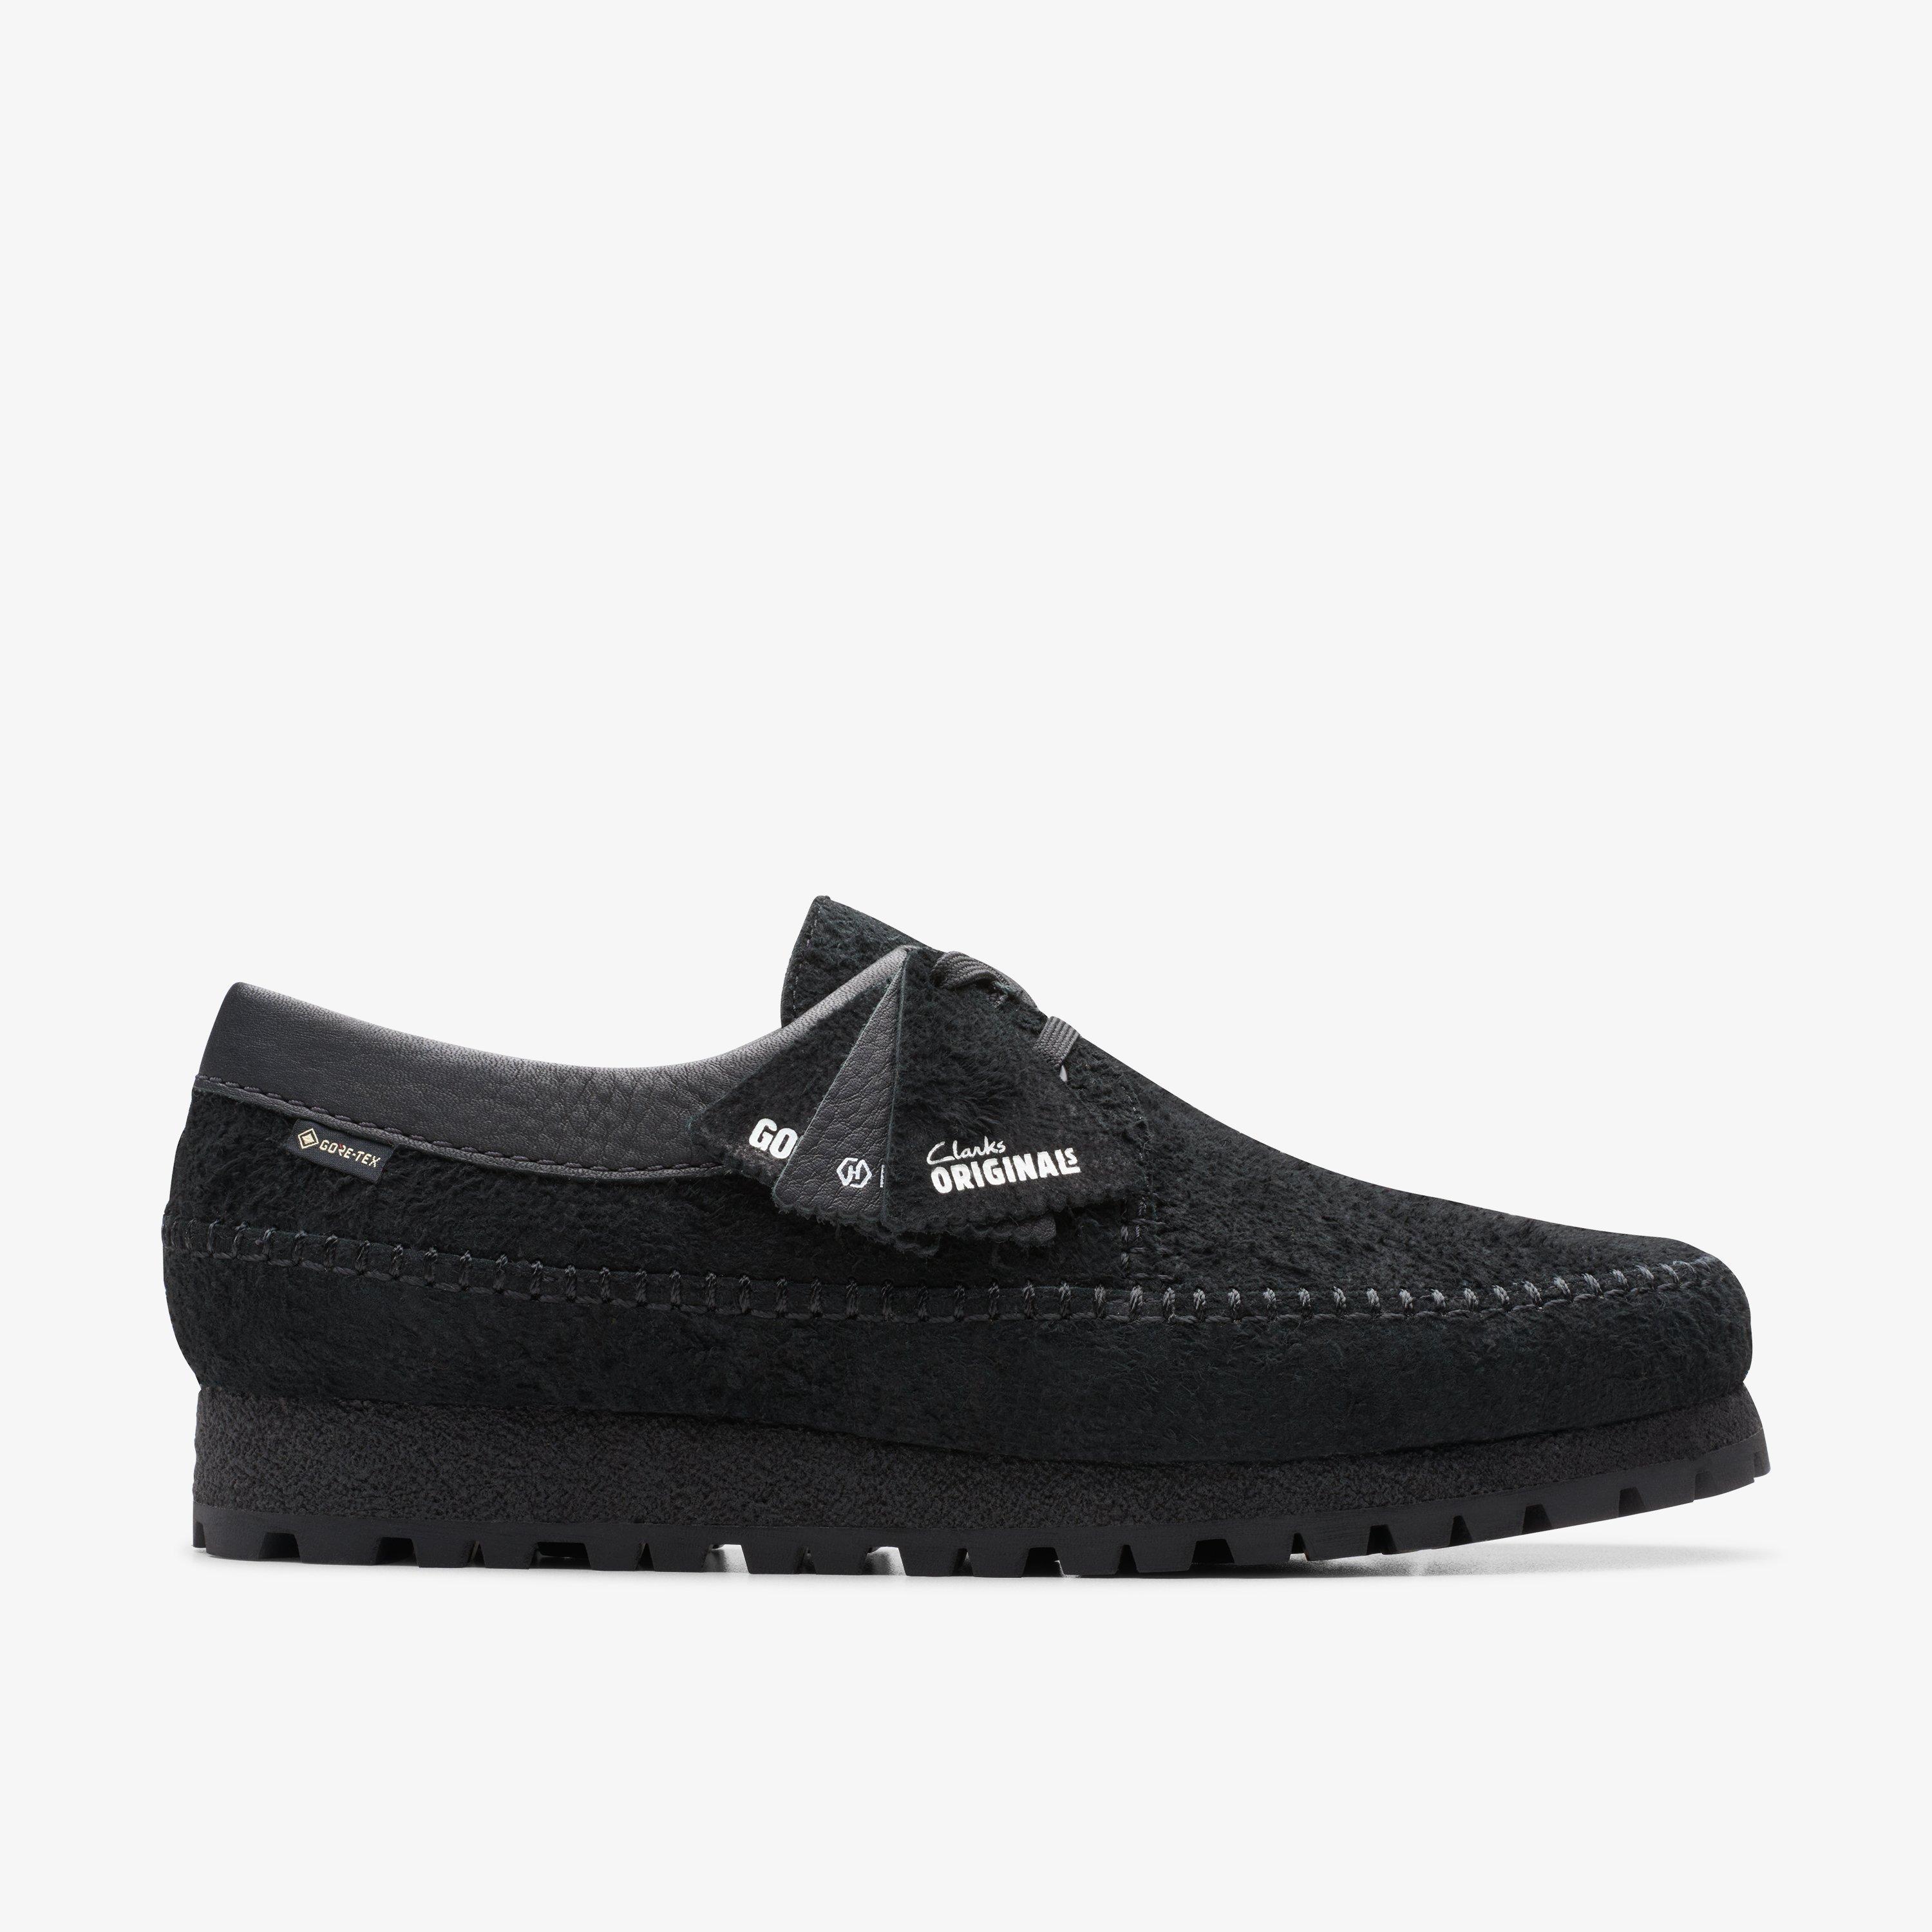 Size 12 Clarks Originals Weaver GTX Black shoes